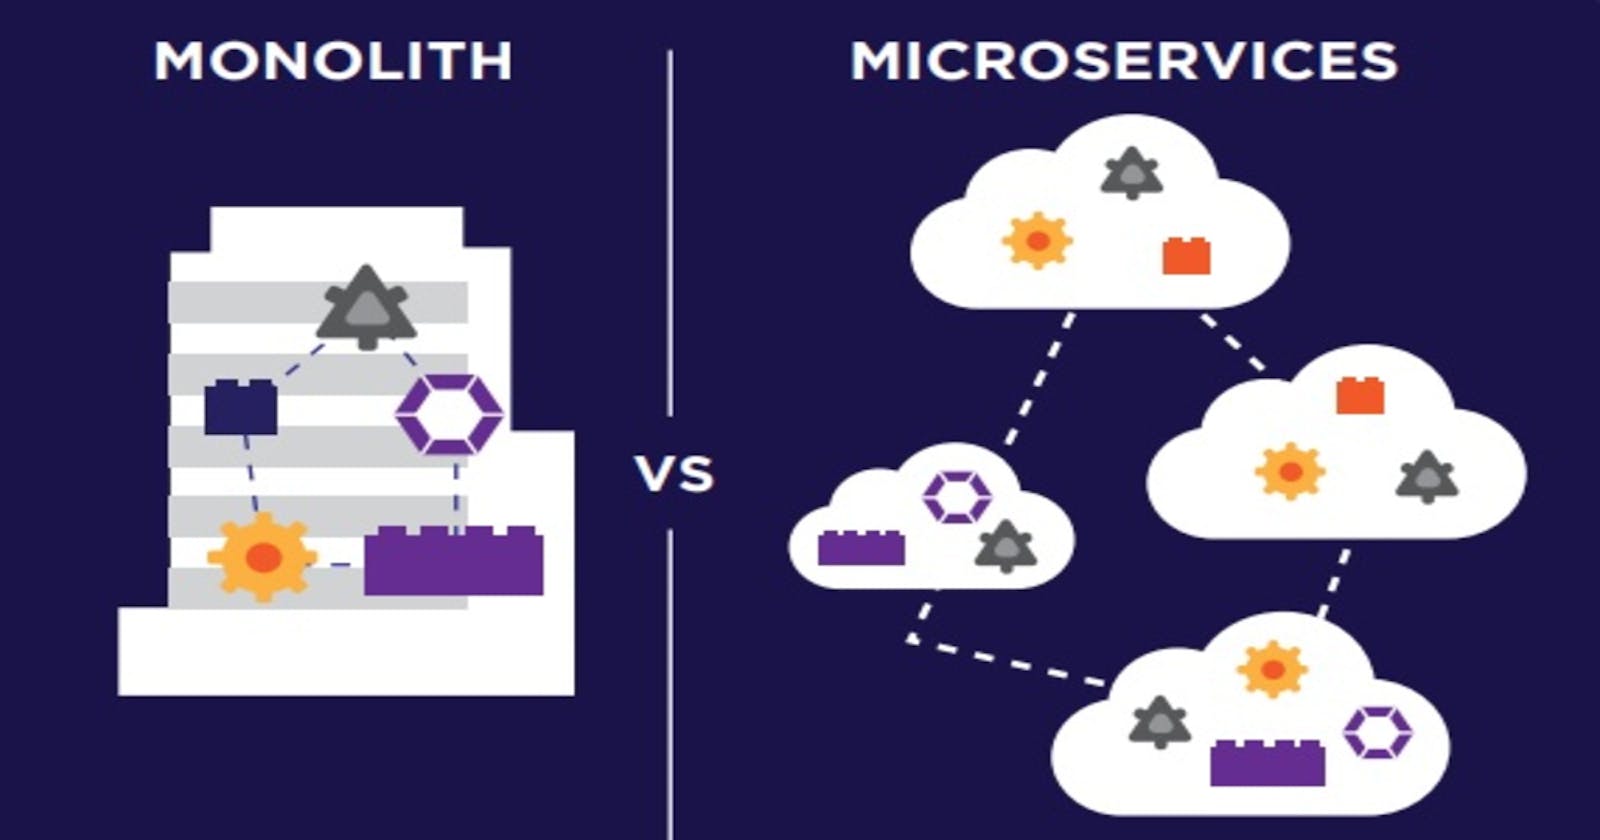 Monolithic vs Microservices Architecture 👨🏻‍💻